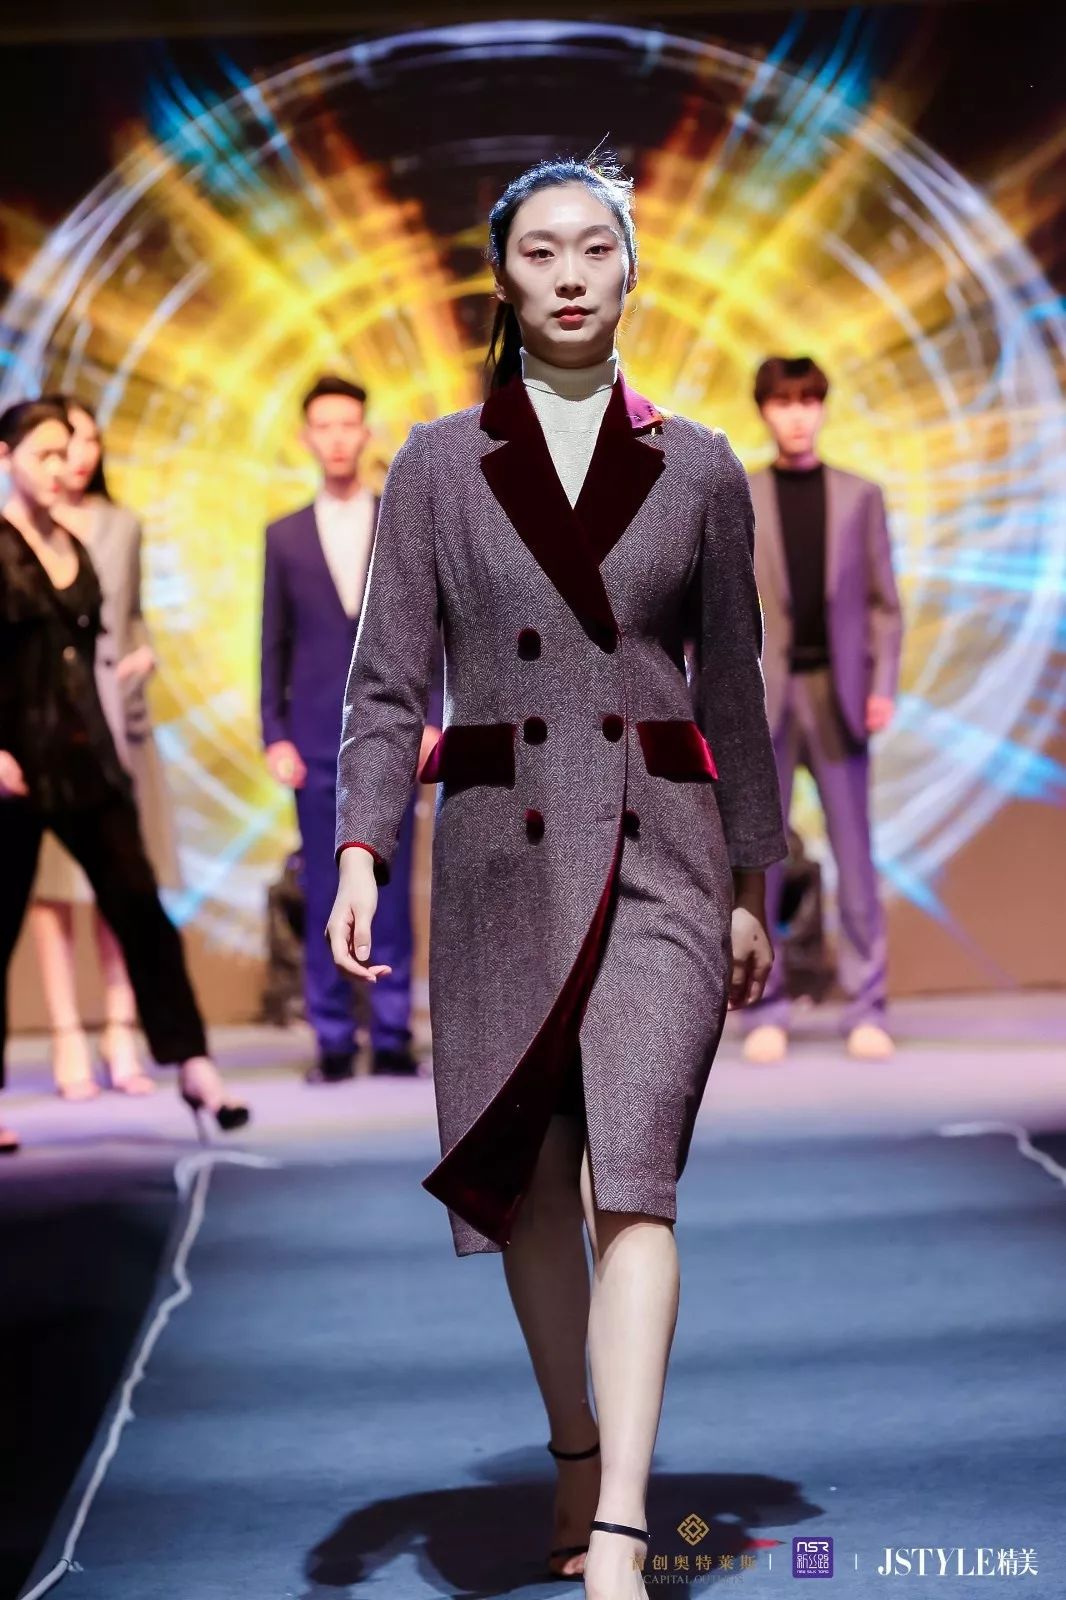 追逐与梦想匹配的舞台 2019新丝路世界模特大赛杭州武汉站圆满完成